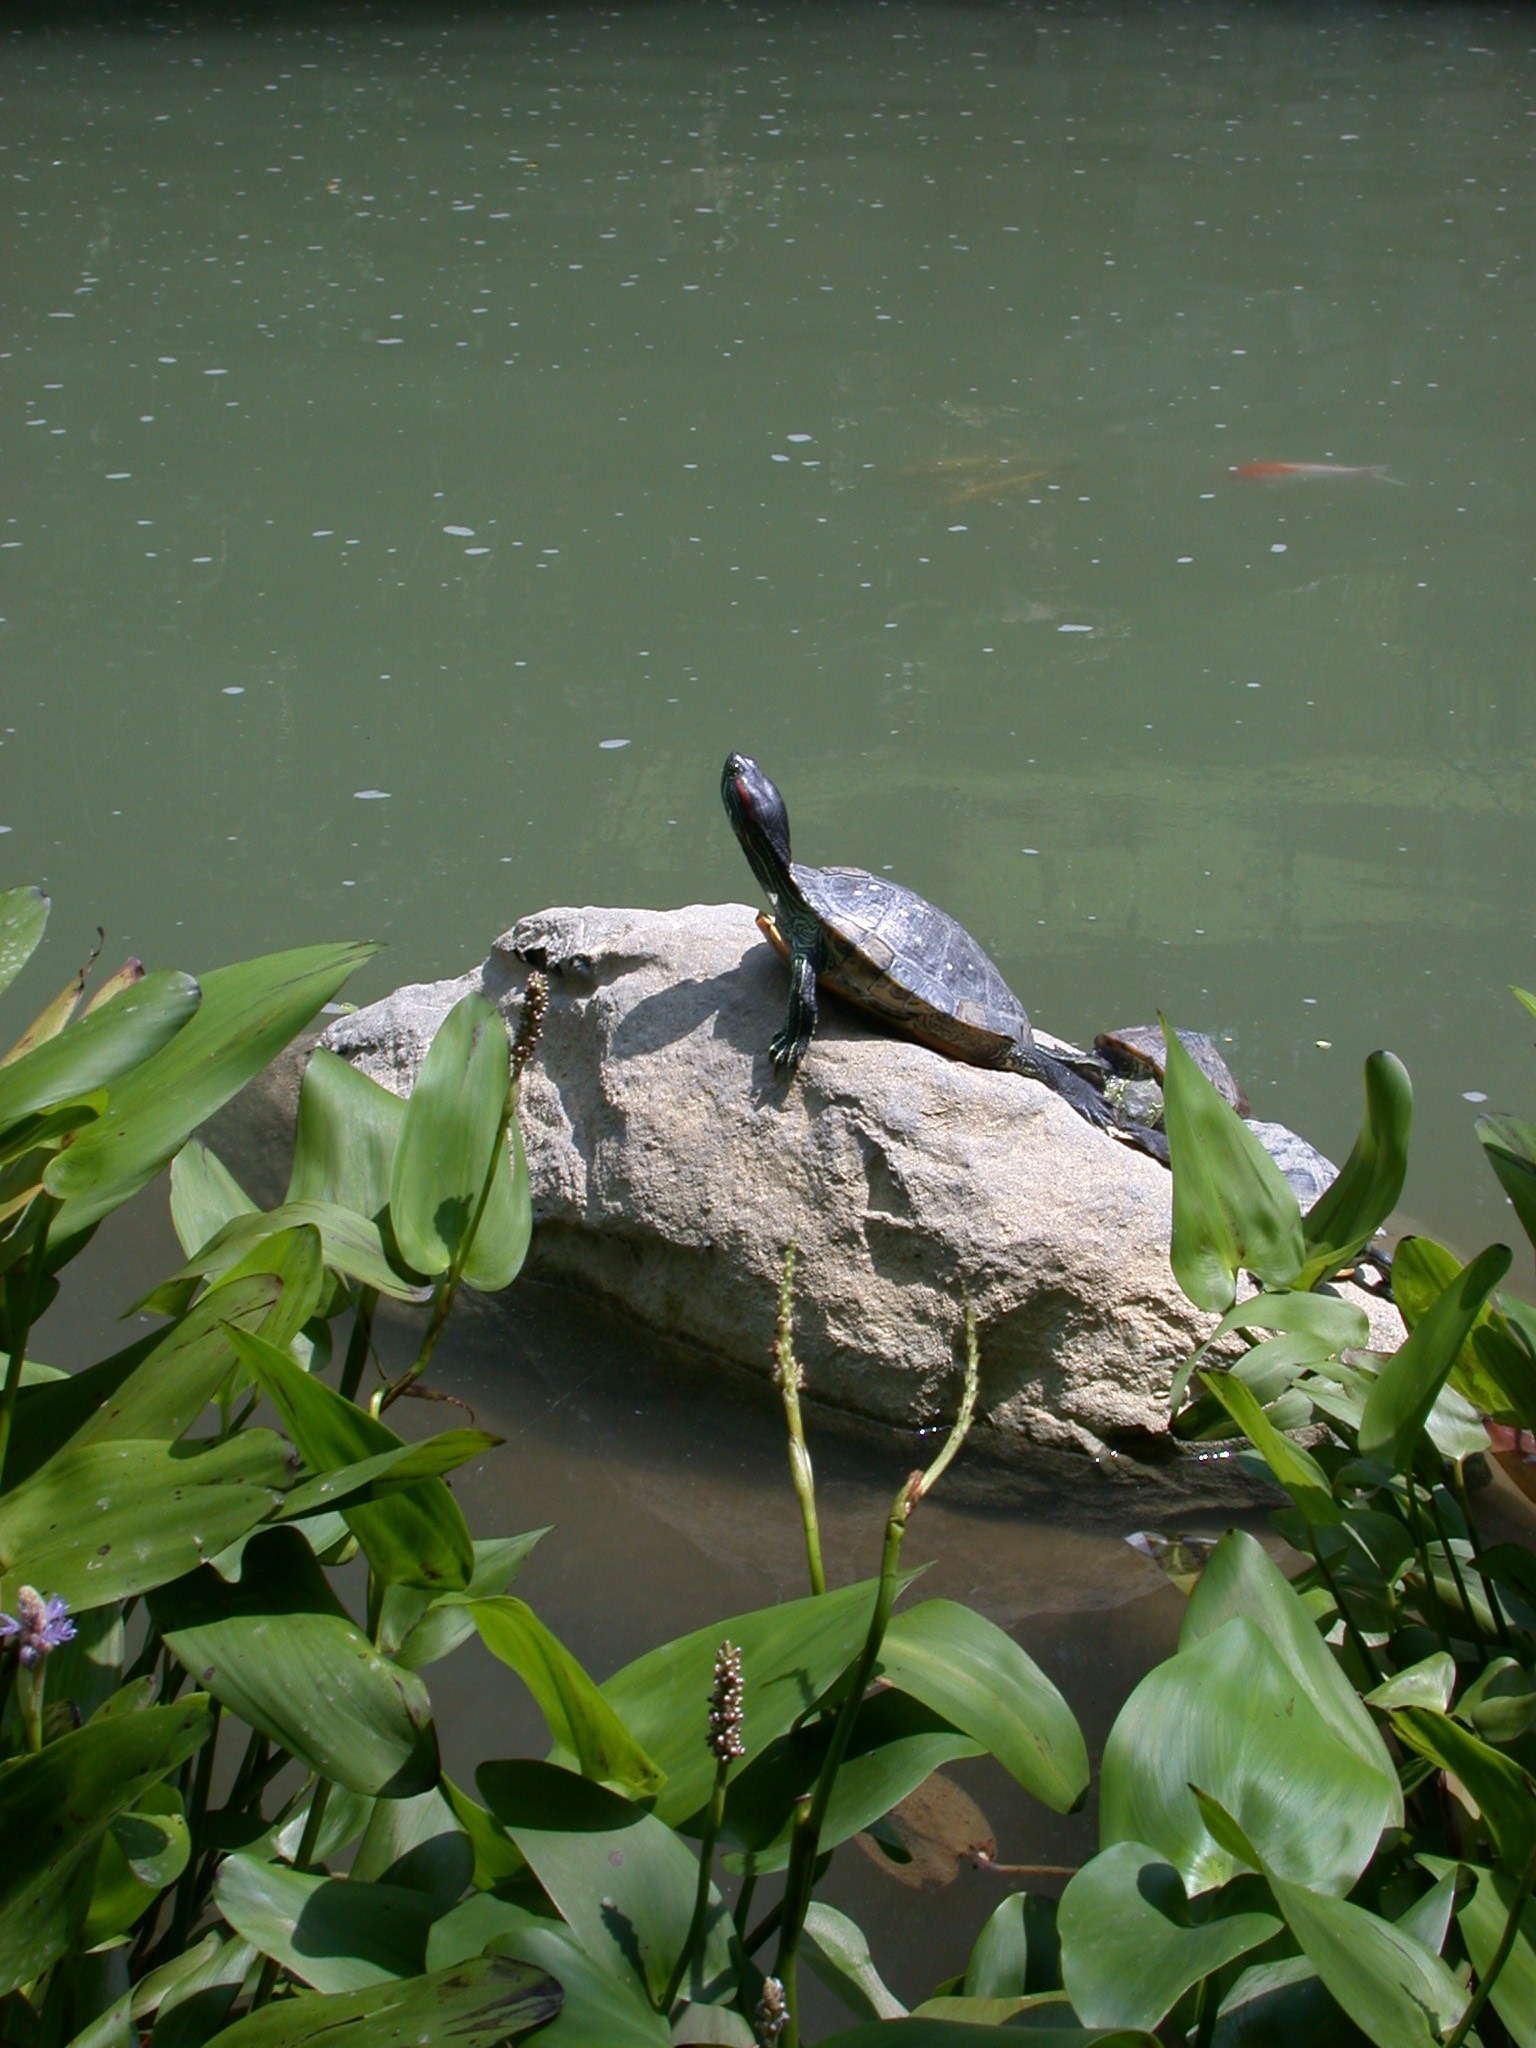 black turtle